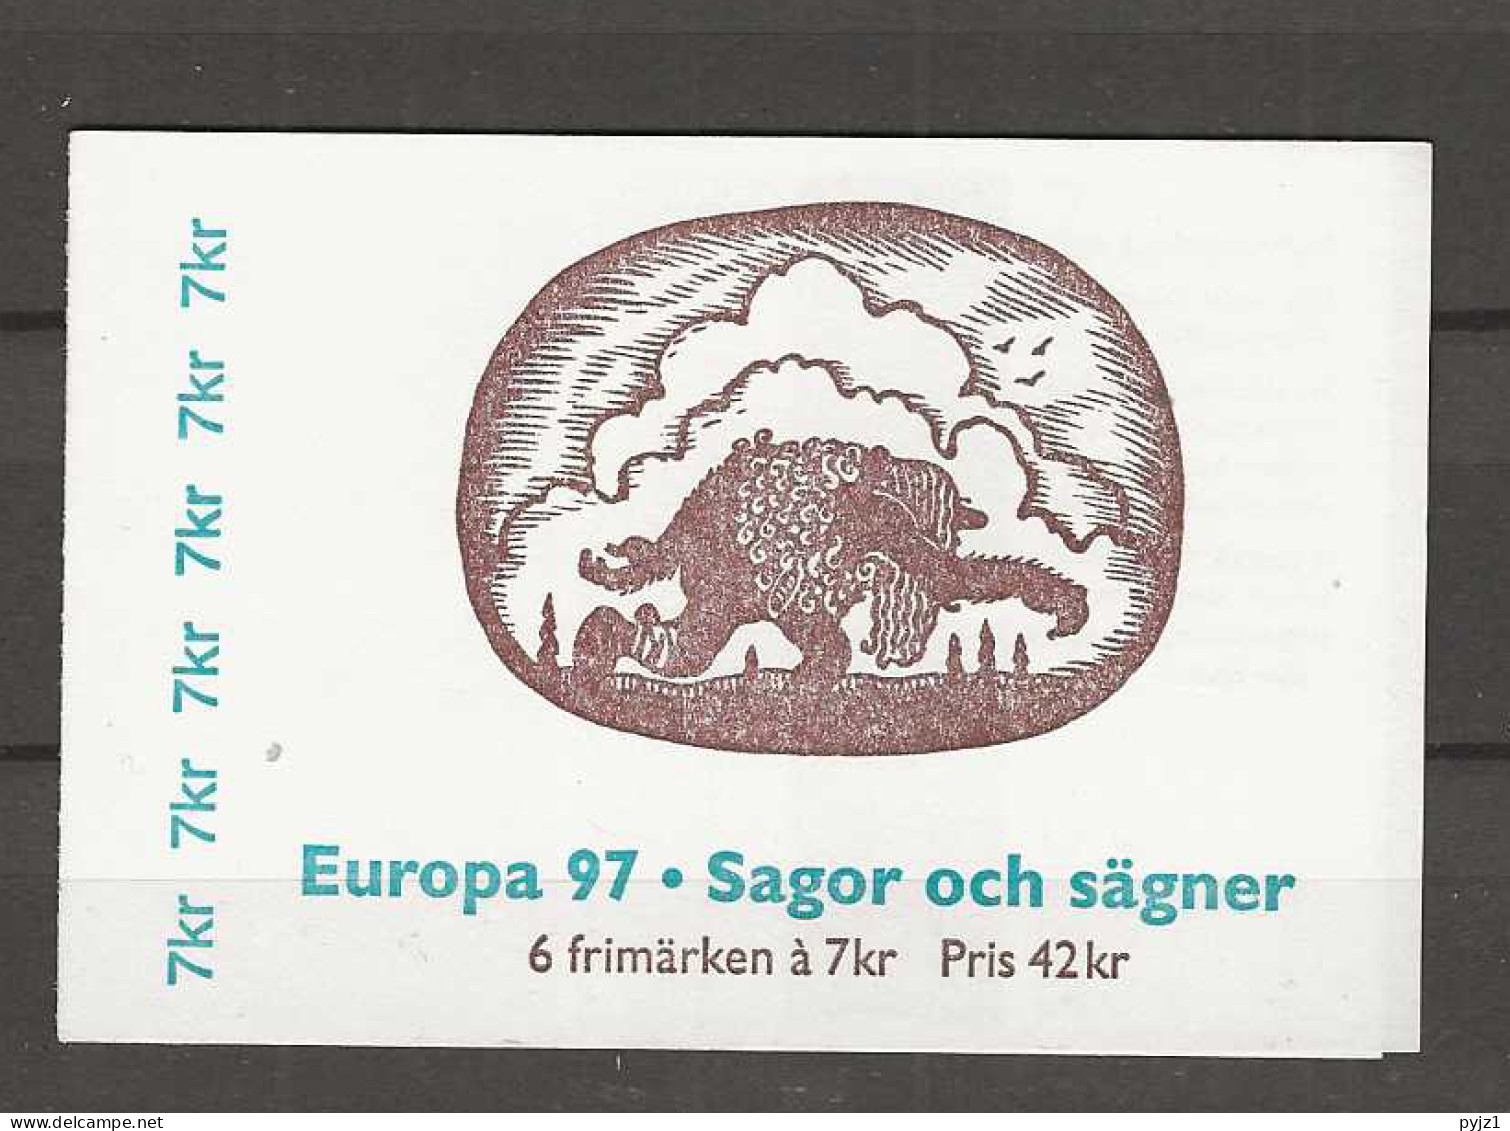 1997 MNH Sweden Booklet Postfris** - 1997